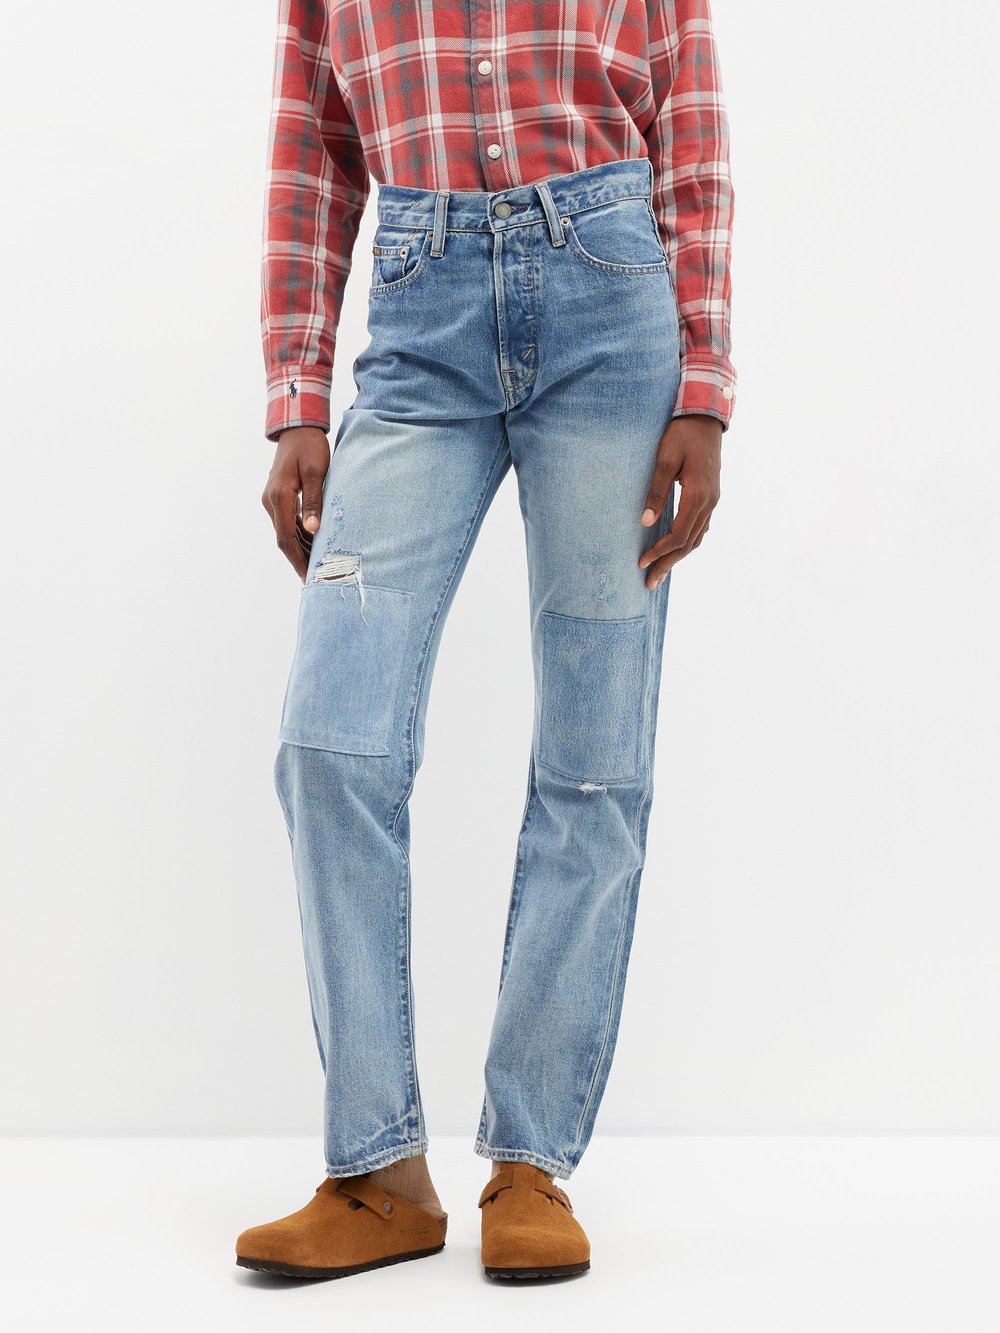 Джинсы прямого кроя с нашивками и потертостями Polo Ralph Lauren, синий брюки и джинсы oshkosh b gosh джинсы для девочки с заплатками